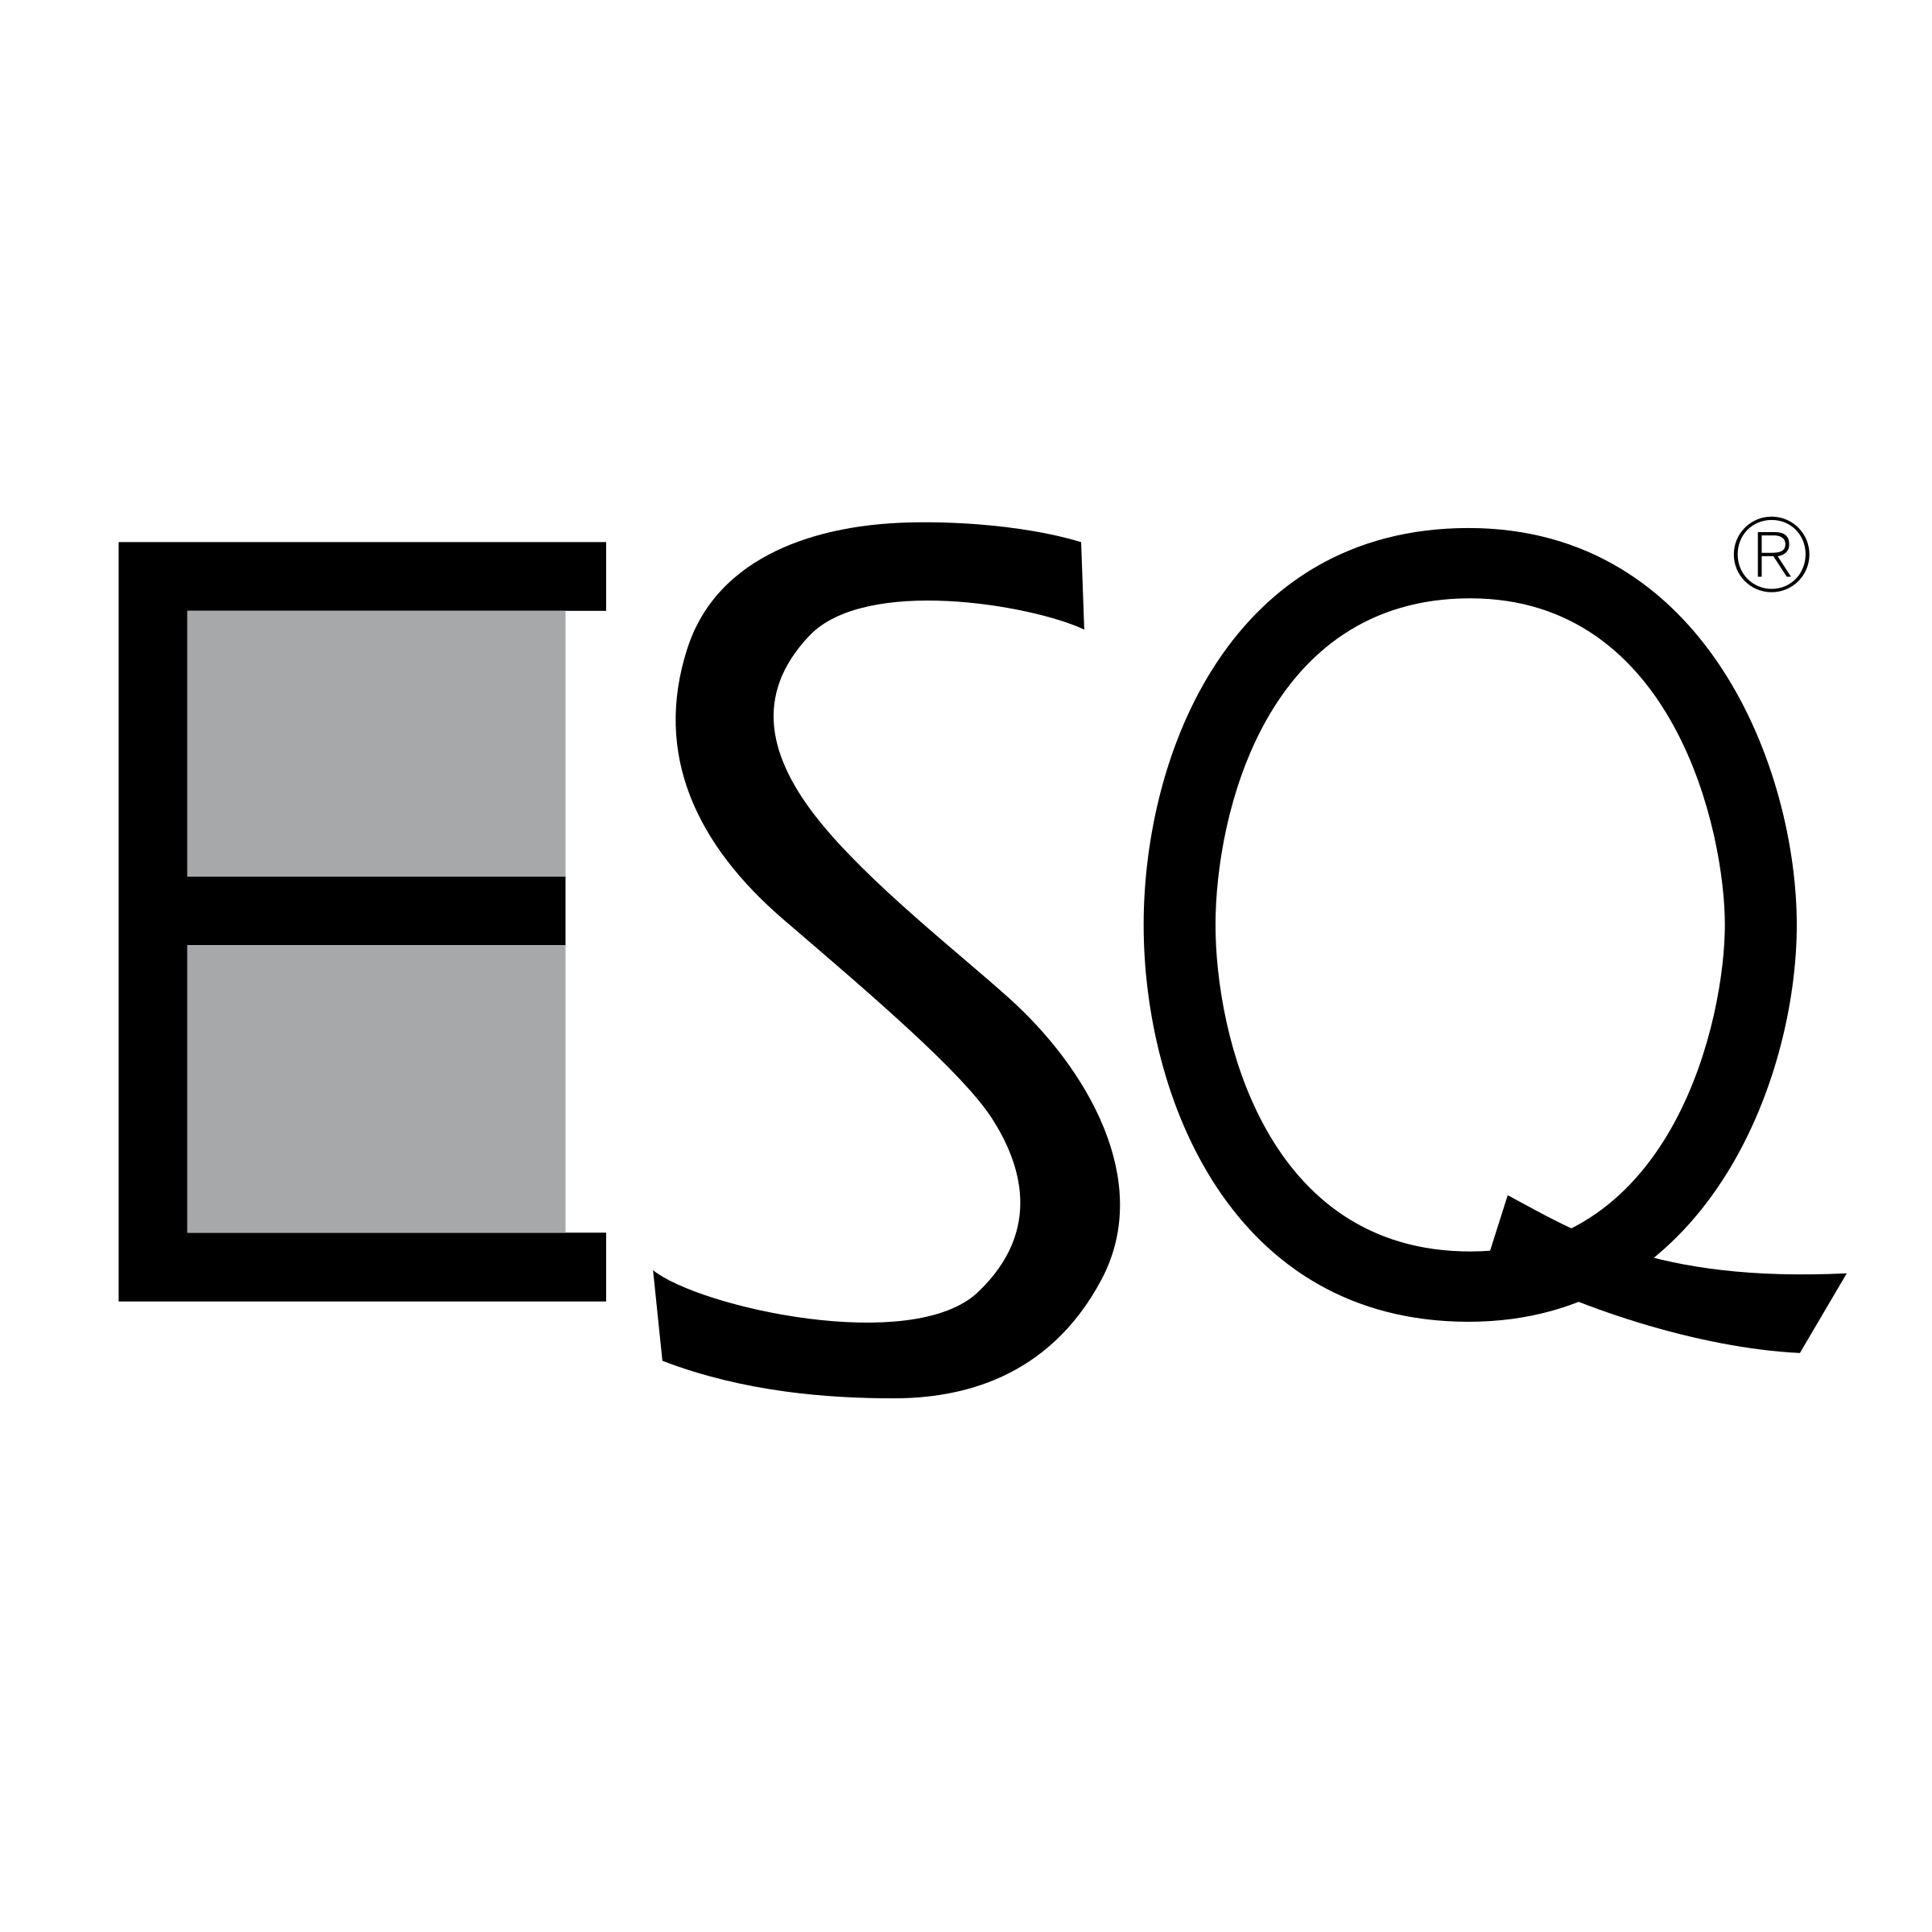 Esq Logo - ESQ Logo PNG Transparent & SVG Vector